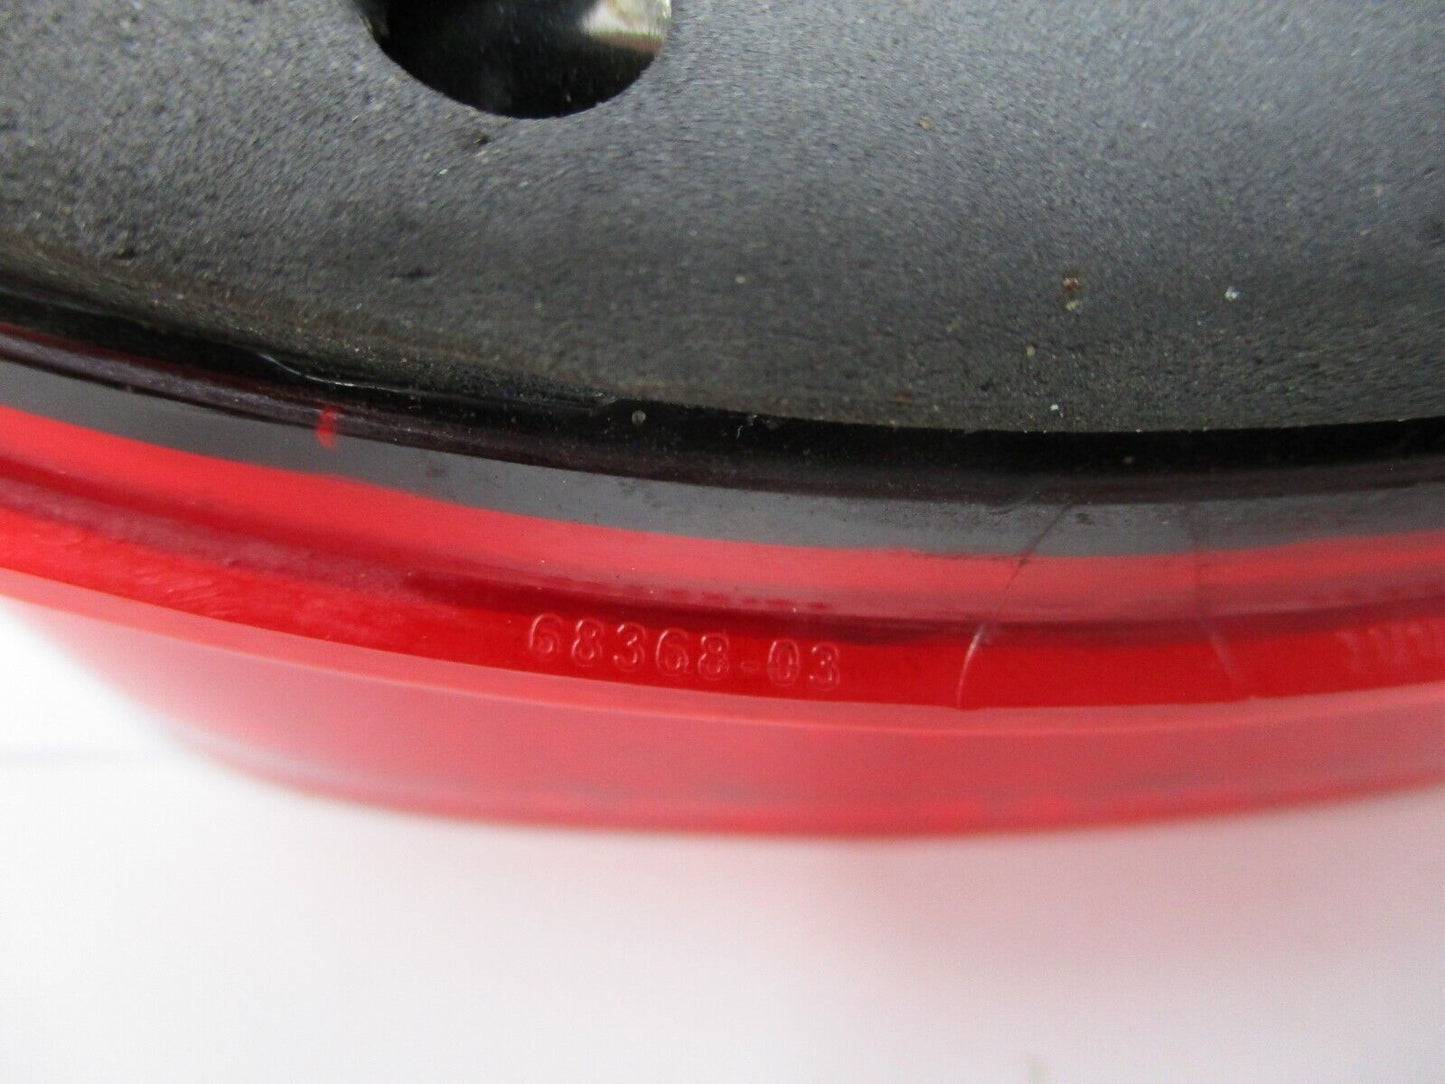 Harley Davidson OEM Tail Light Lens, Solid Red Lens 68368-03